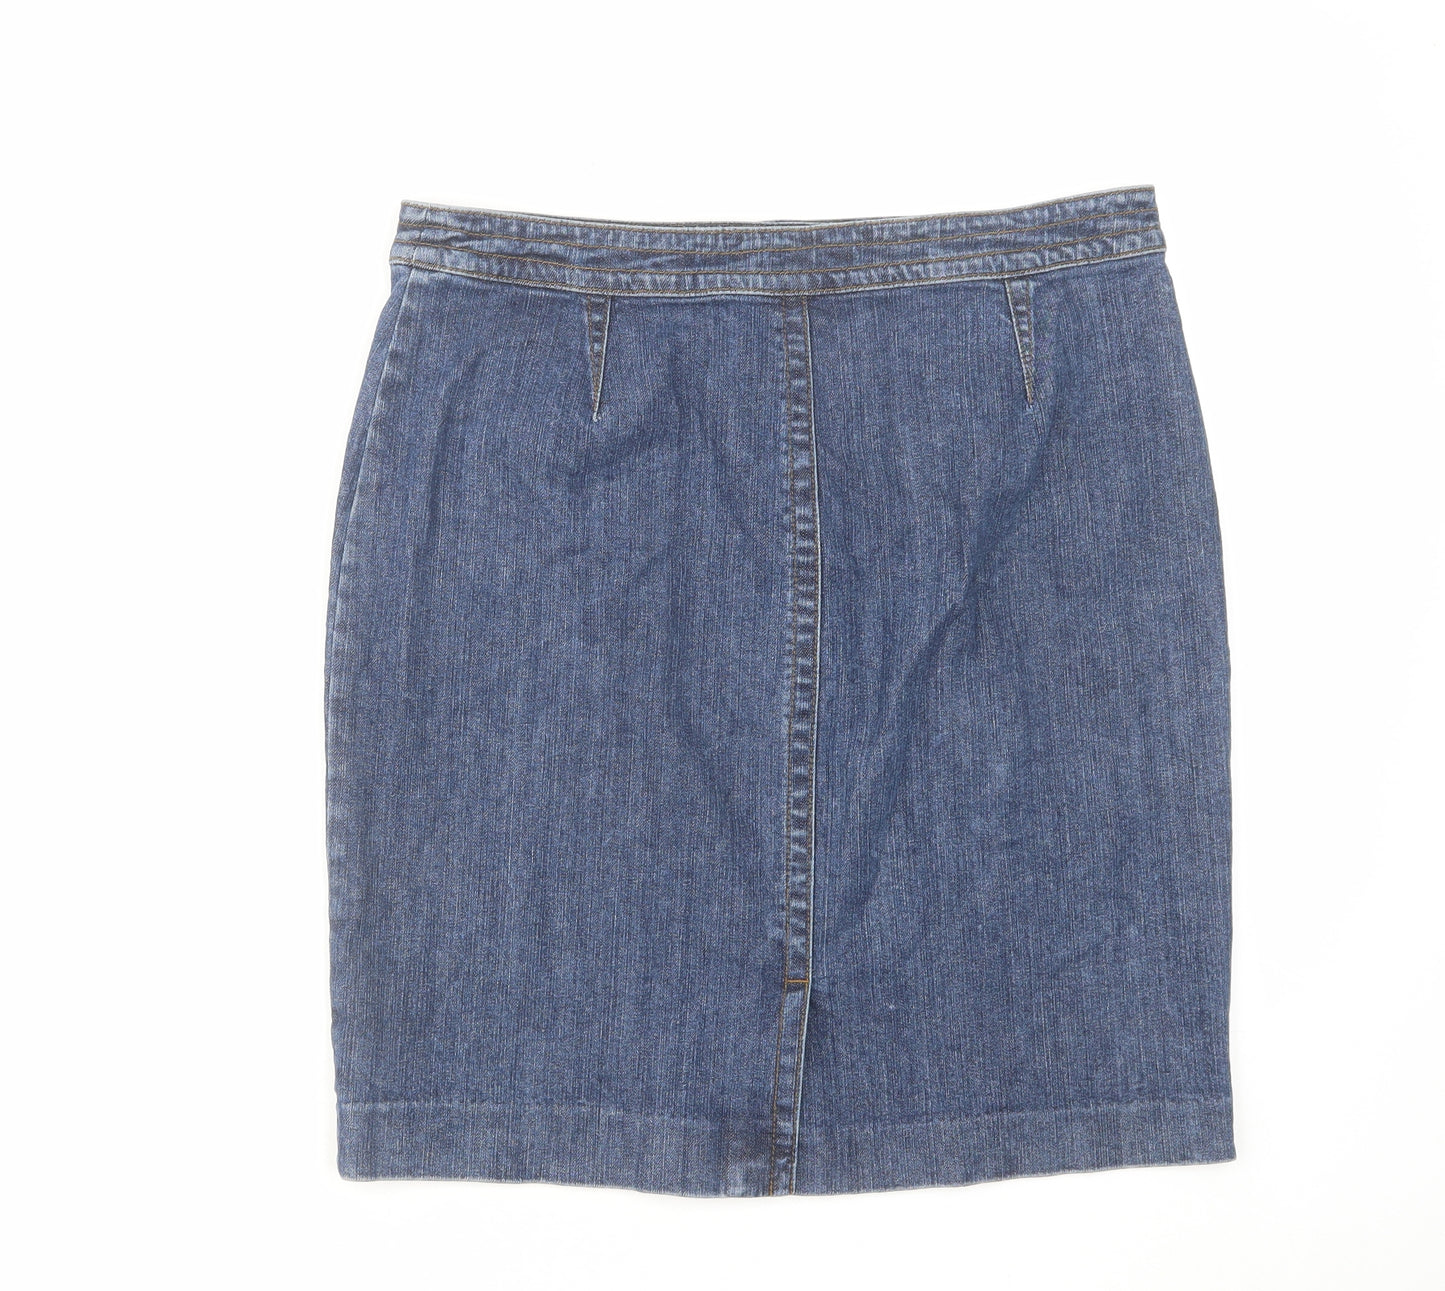 Jones New York Womens Blue Cotton A-Line Skirt Size 12 Zip